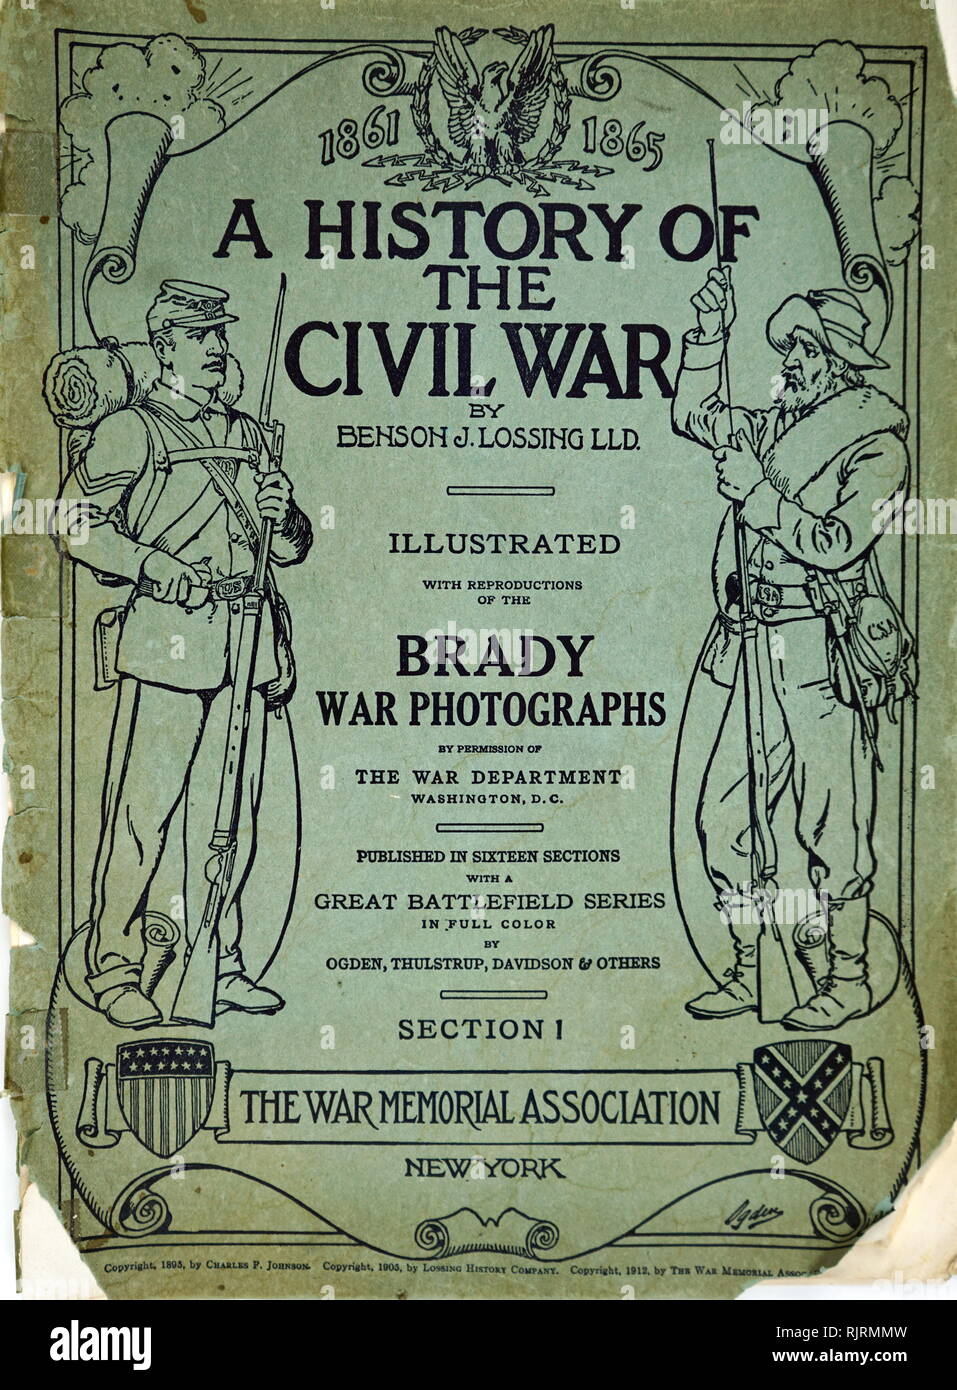 La Guerra Civil americana álbum de fotos conmemorativas por Matthew Brady. Publicado 1865 Foto de stock